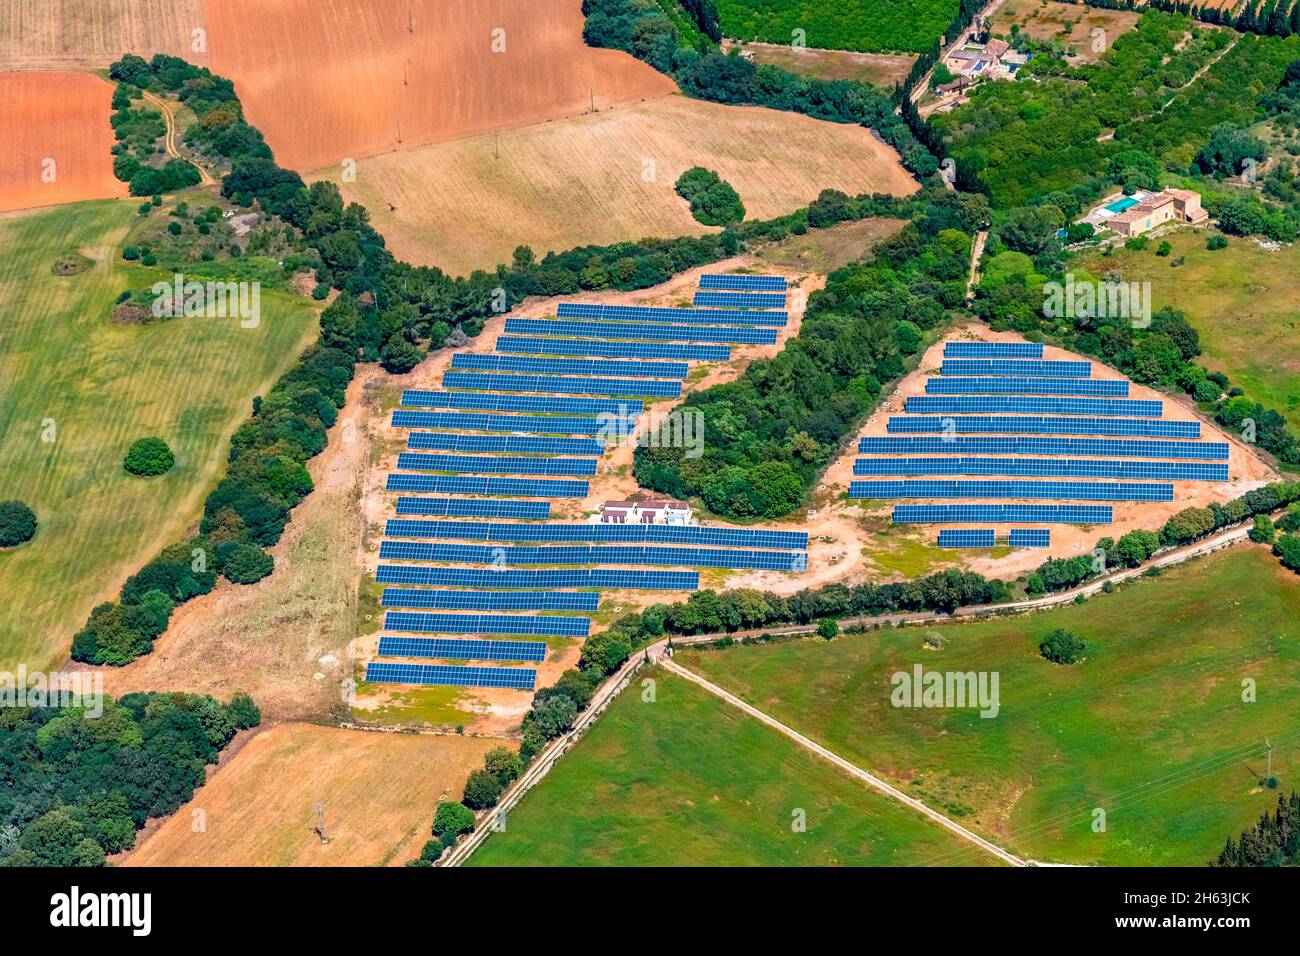 vue aérienne,système solaire,planta fotovoltaica de s'ermitori,muro,mallorca,iles baléares,espagne Banque D'Images